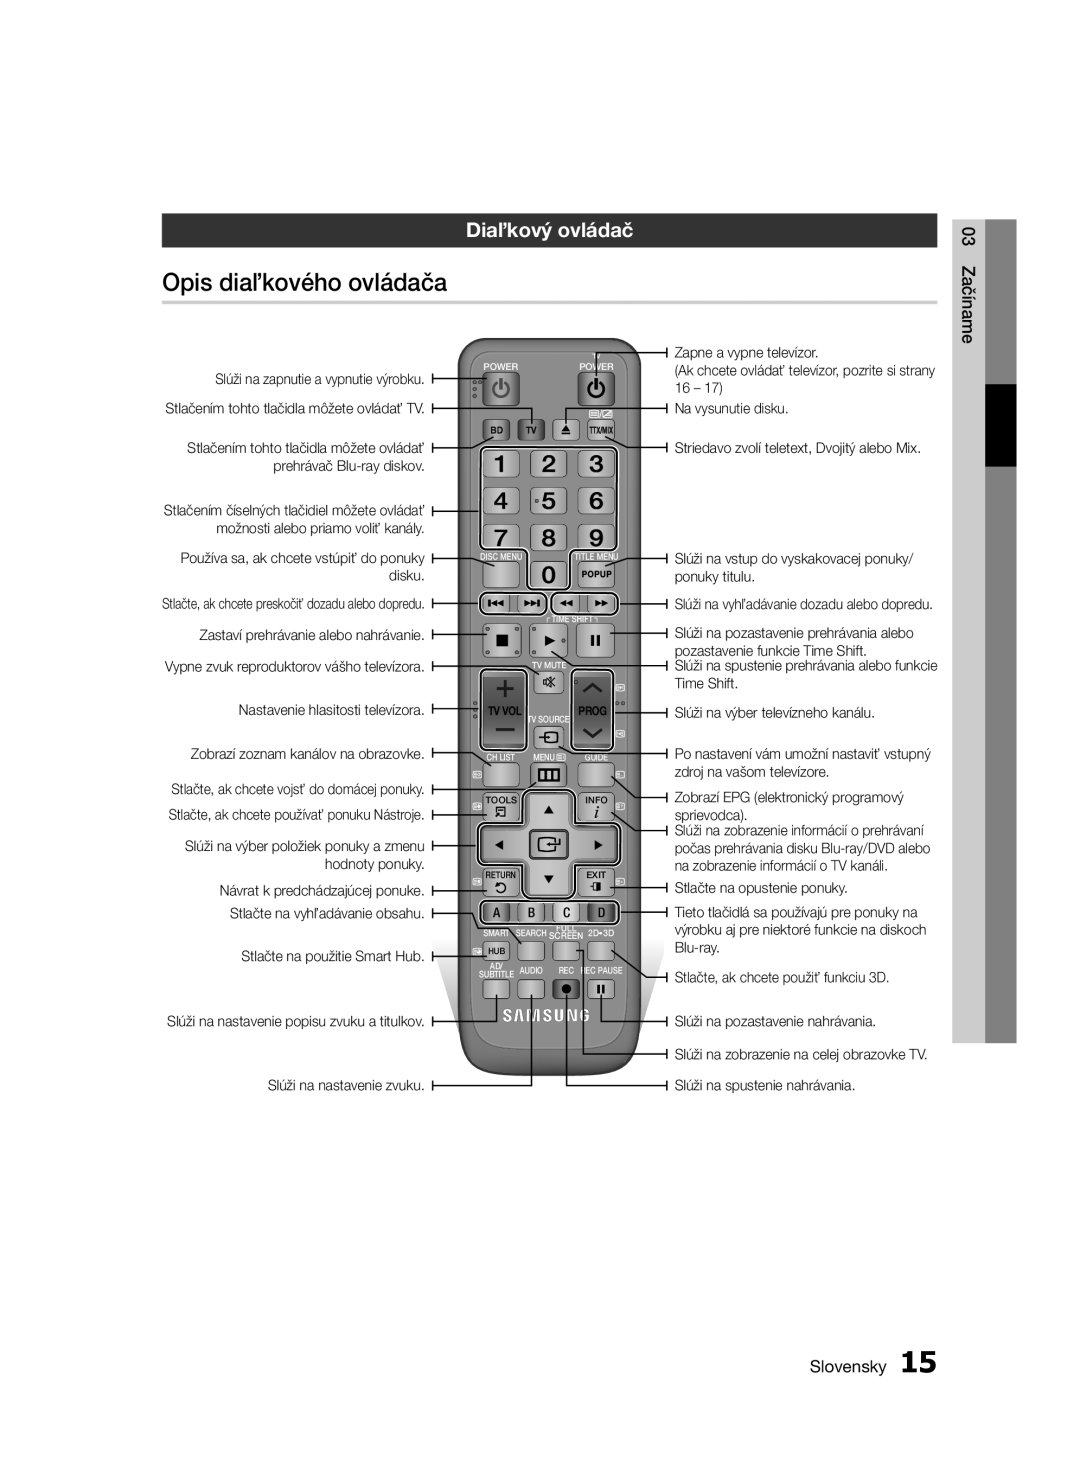 Samsung BD-E6300/EN Opis diaľkového ovládača, Diaľkový ovládač, 03 Začíname, Slovensky, Nastavenie hlasitosti televízora 